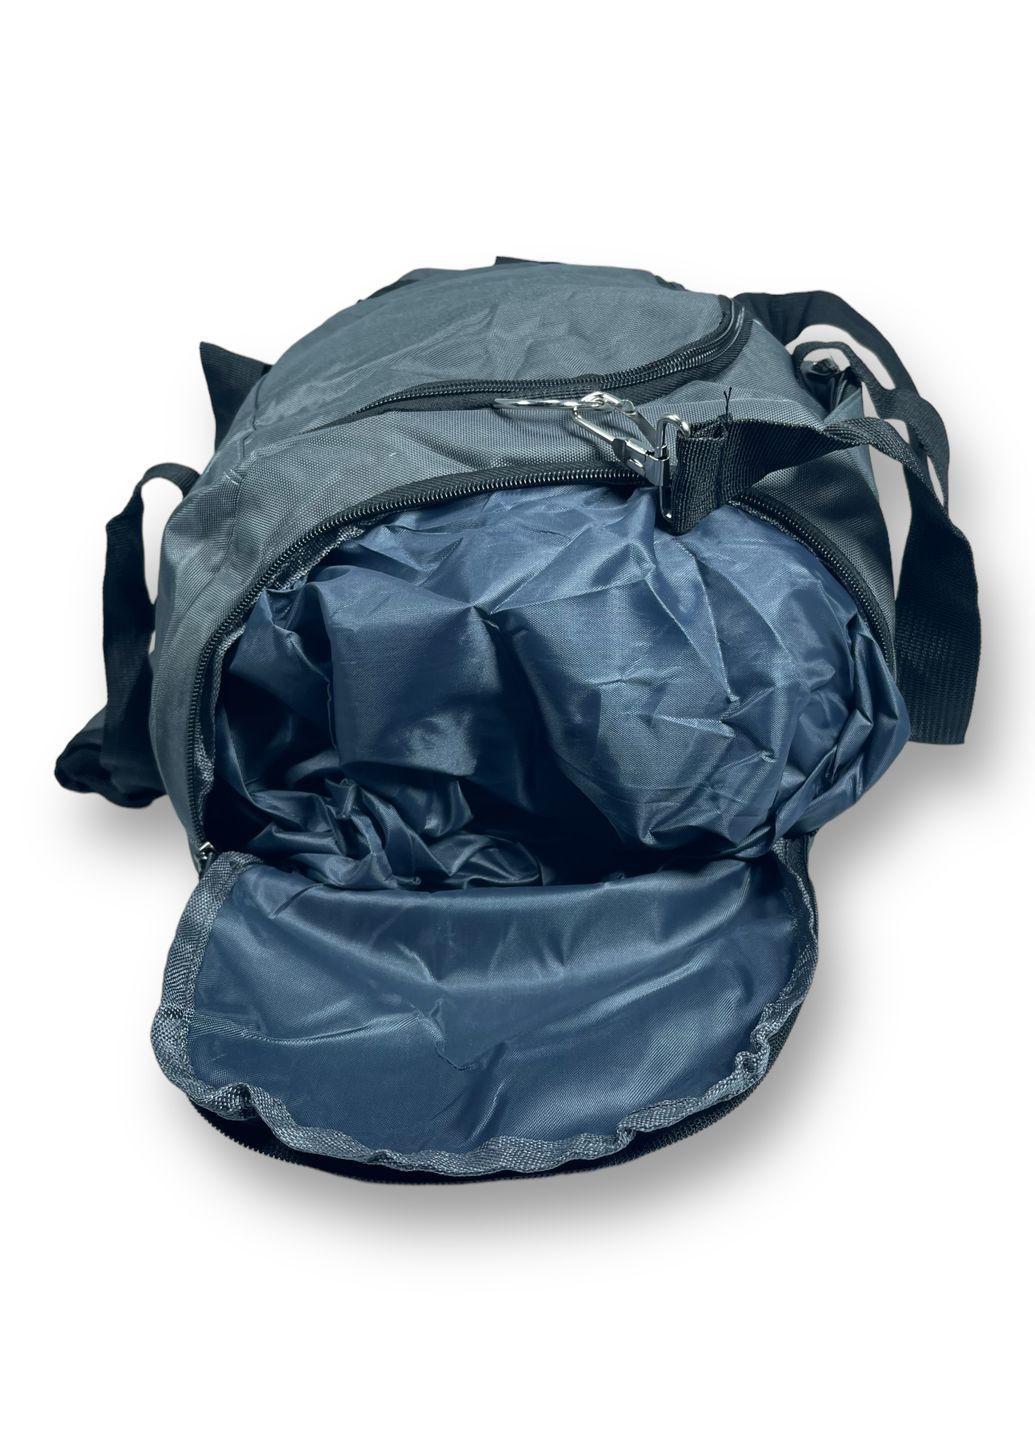 Дорожня сумка Fashion (267495601)